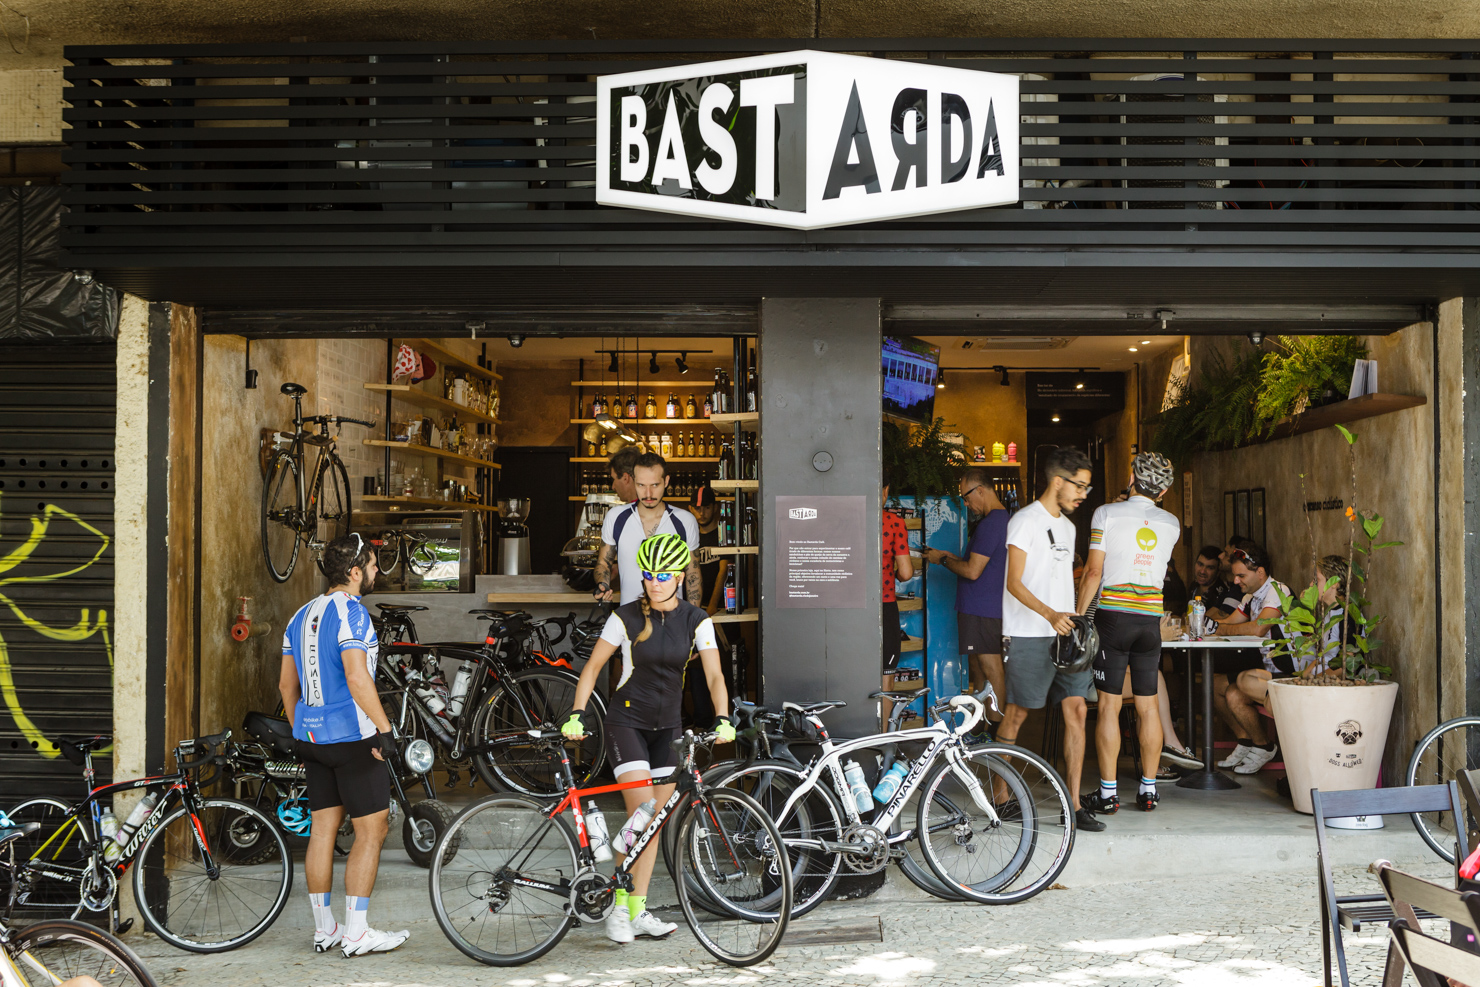 bastarda do bem cafe coffee bicycle cycling retail rio de janeiro botanical garden brazil sprudge